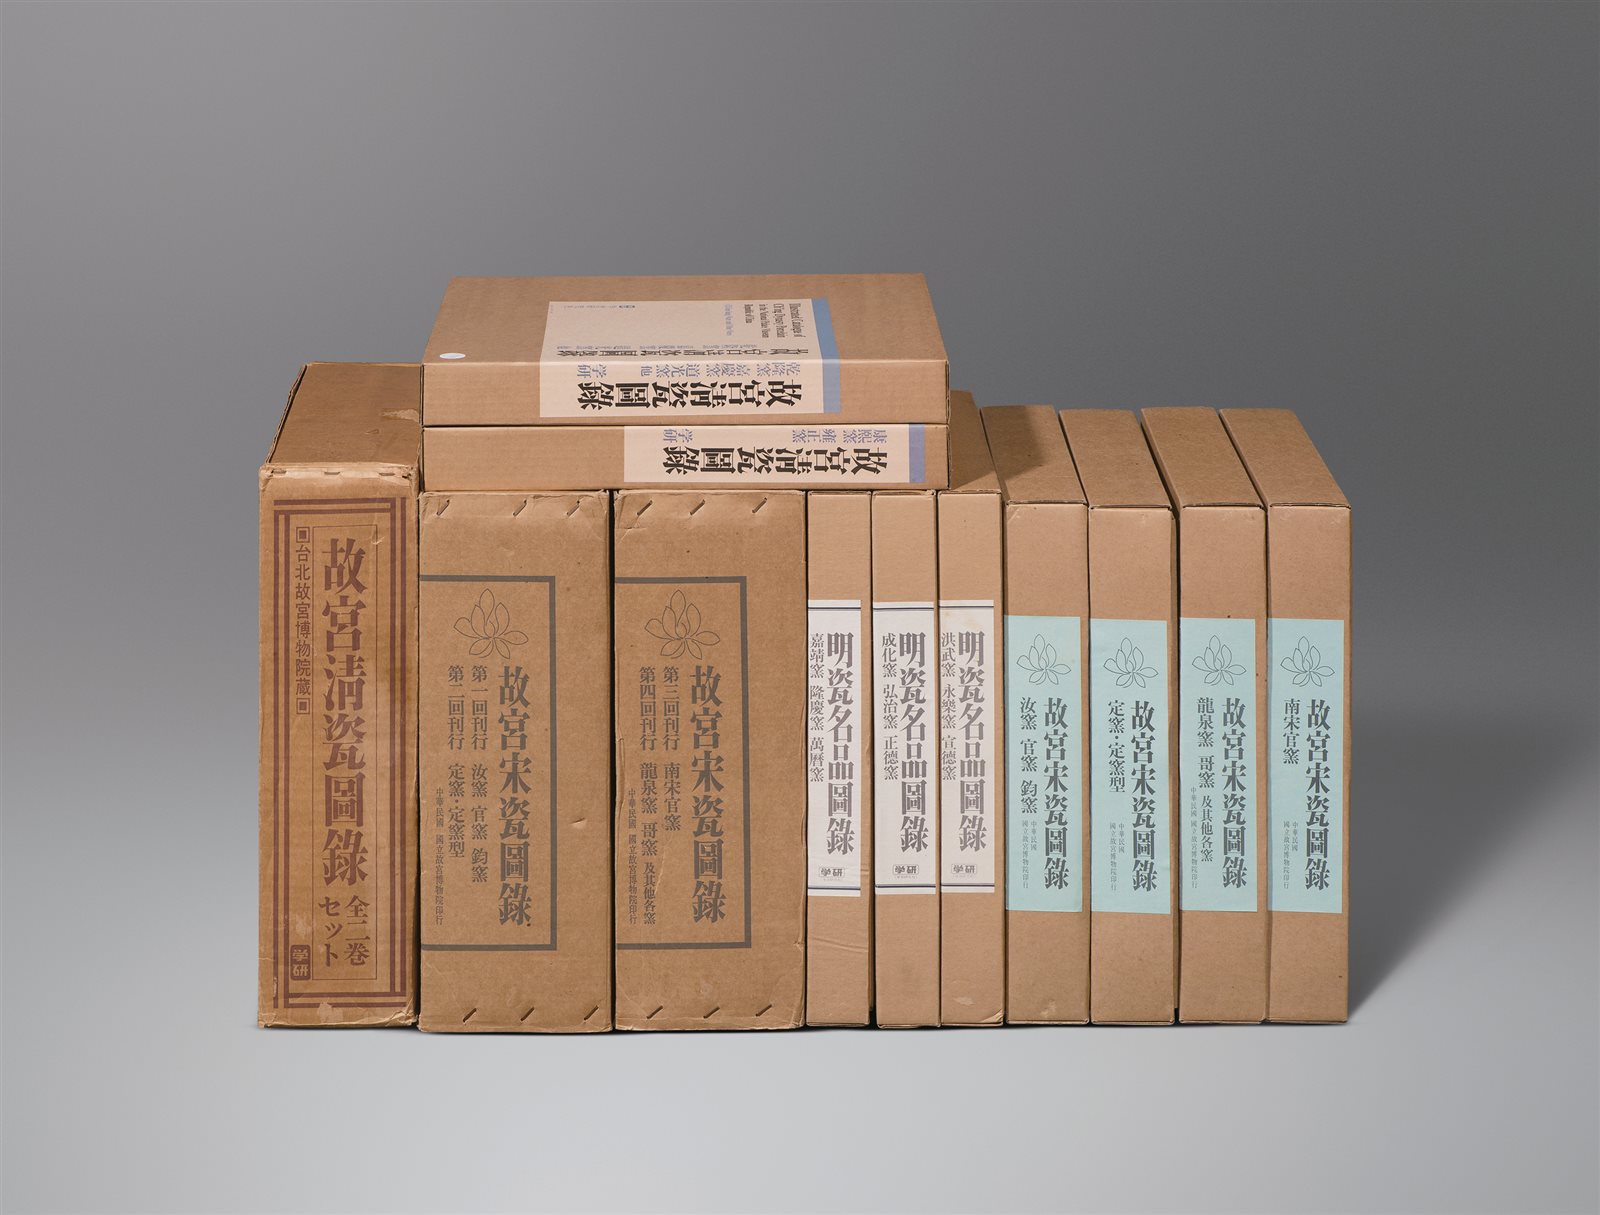 原盒原函精装《宋瓷名品图录》、《明瓷名品图录》、《清瓷名品图录》三套九卷全